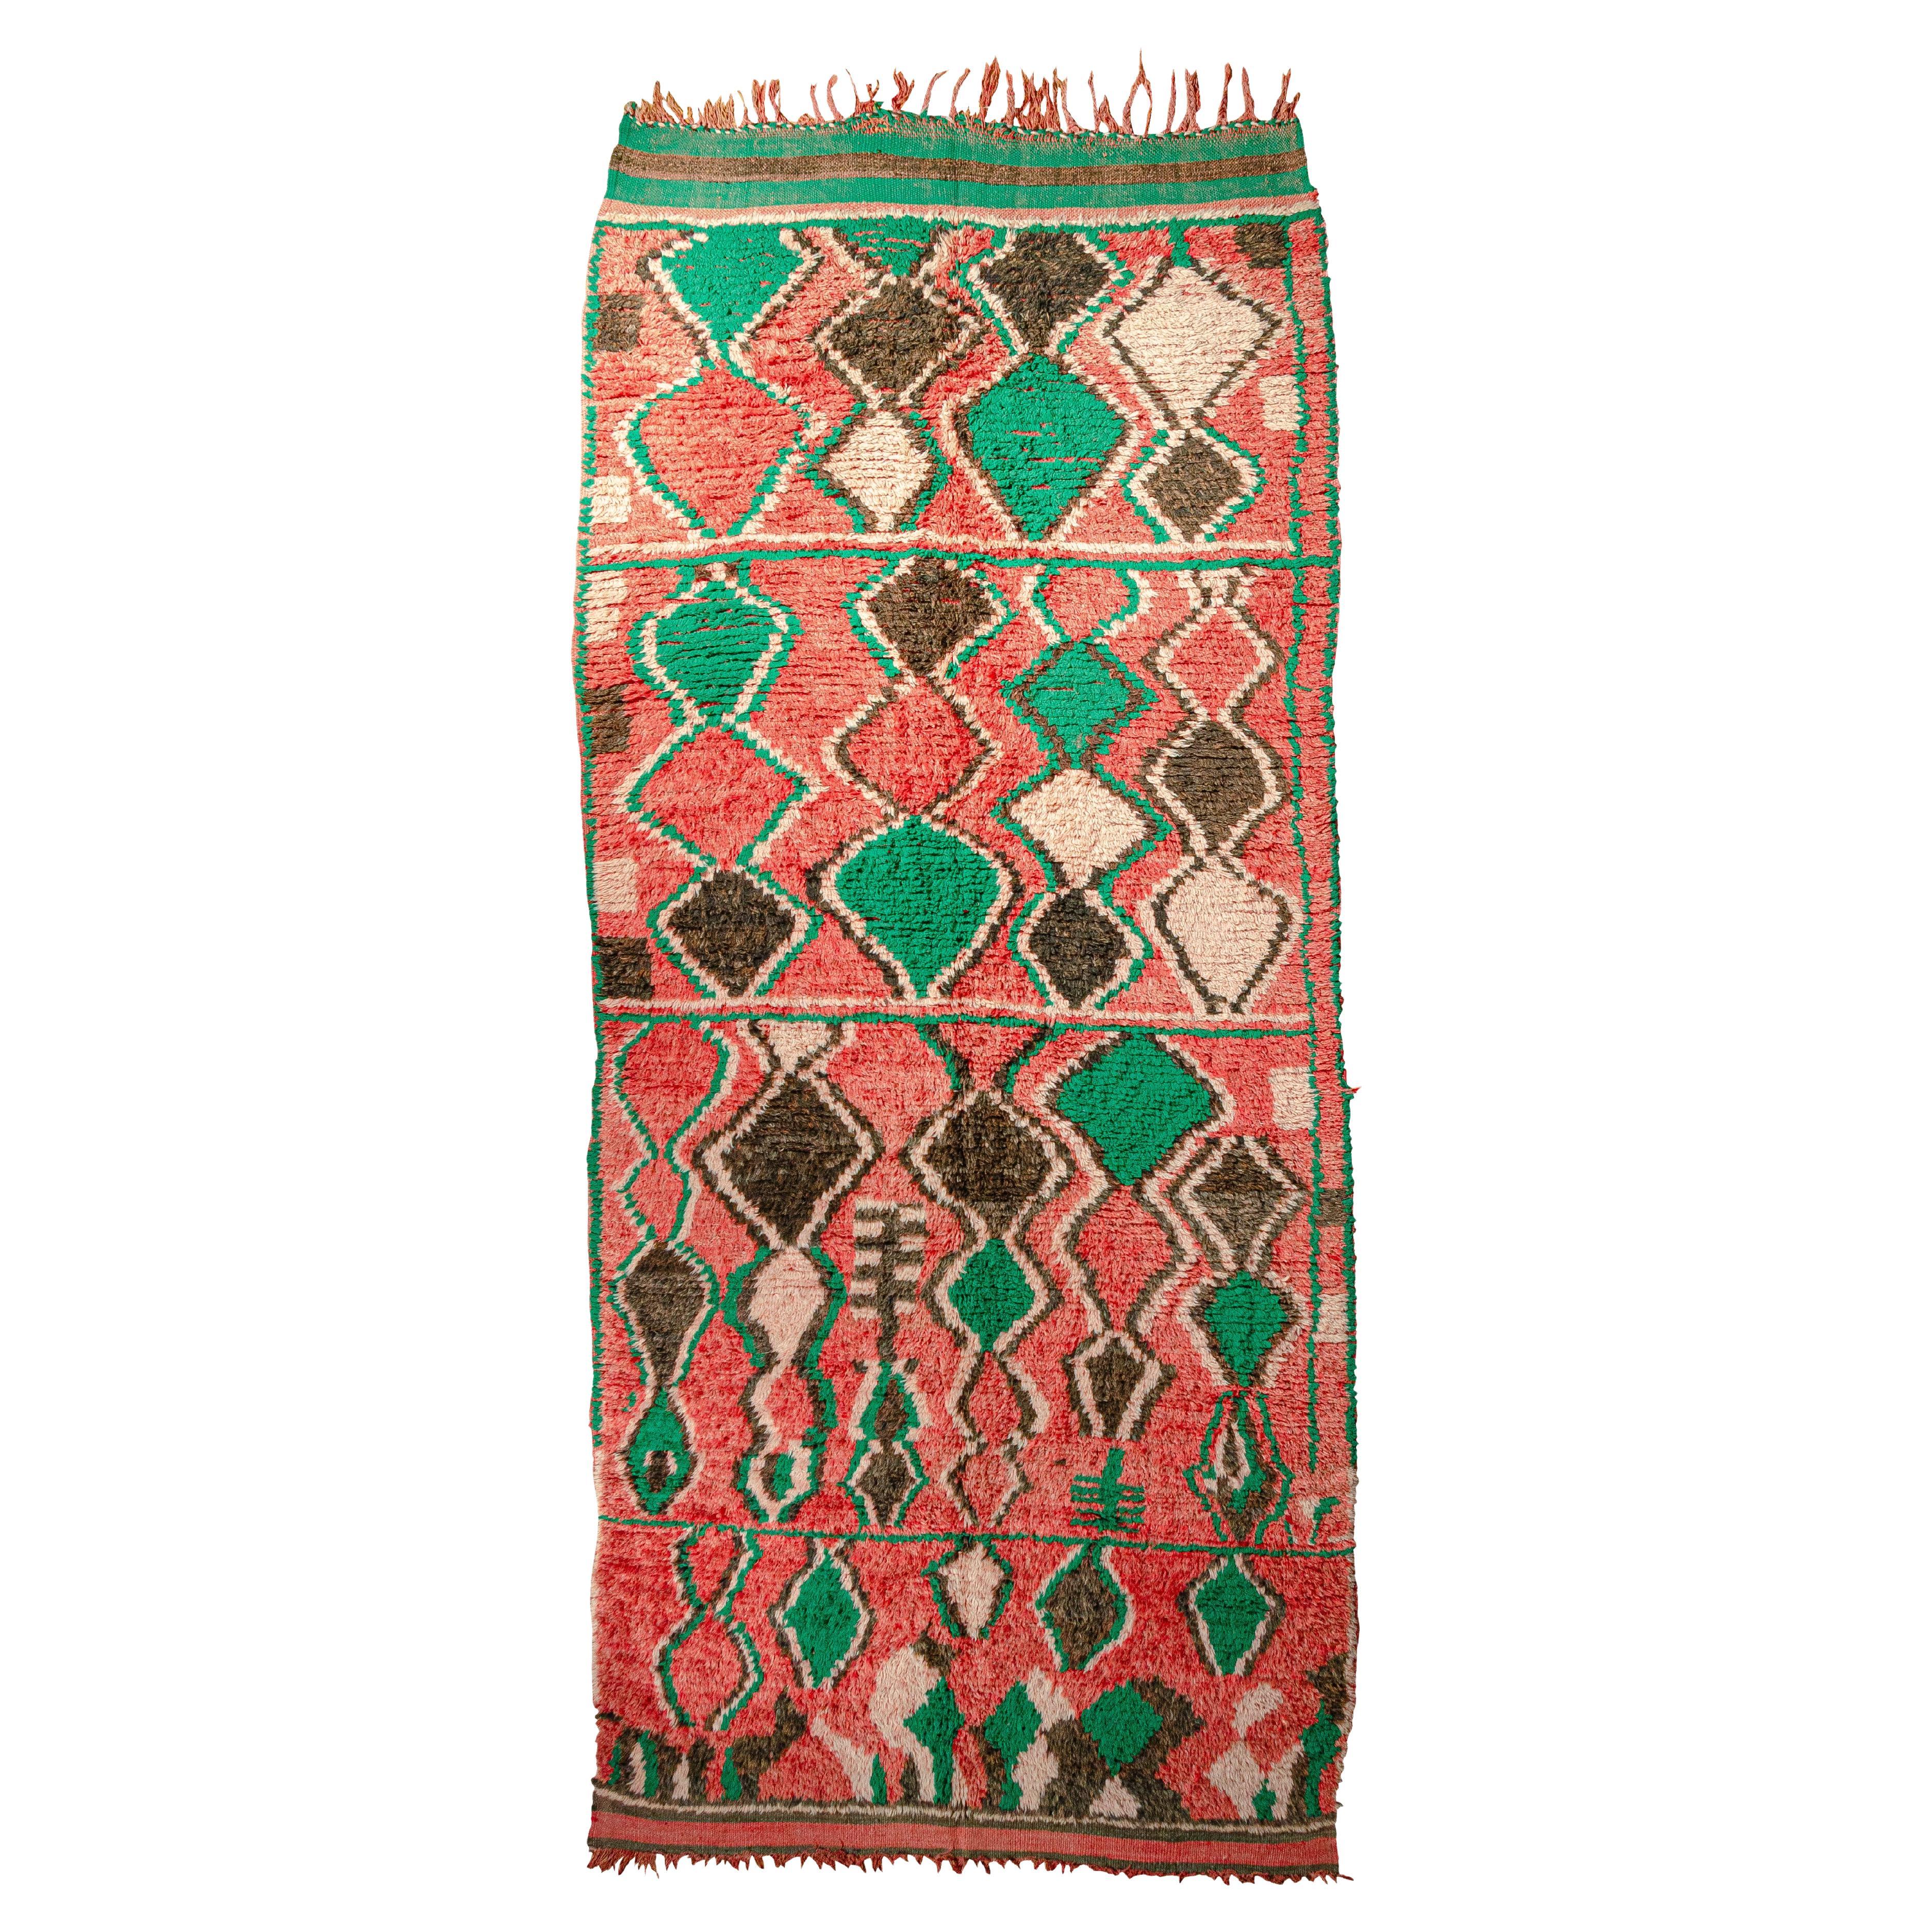 Lebendiger marokkanischer Boujad-Teppich in lebendiger Farbgebung, kuratiert von Breuckelen Berber